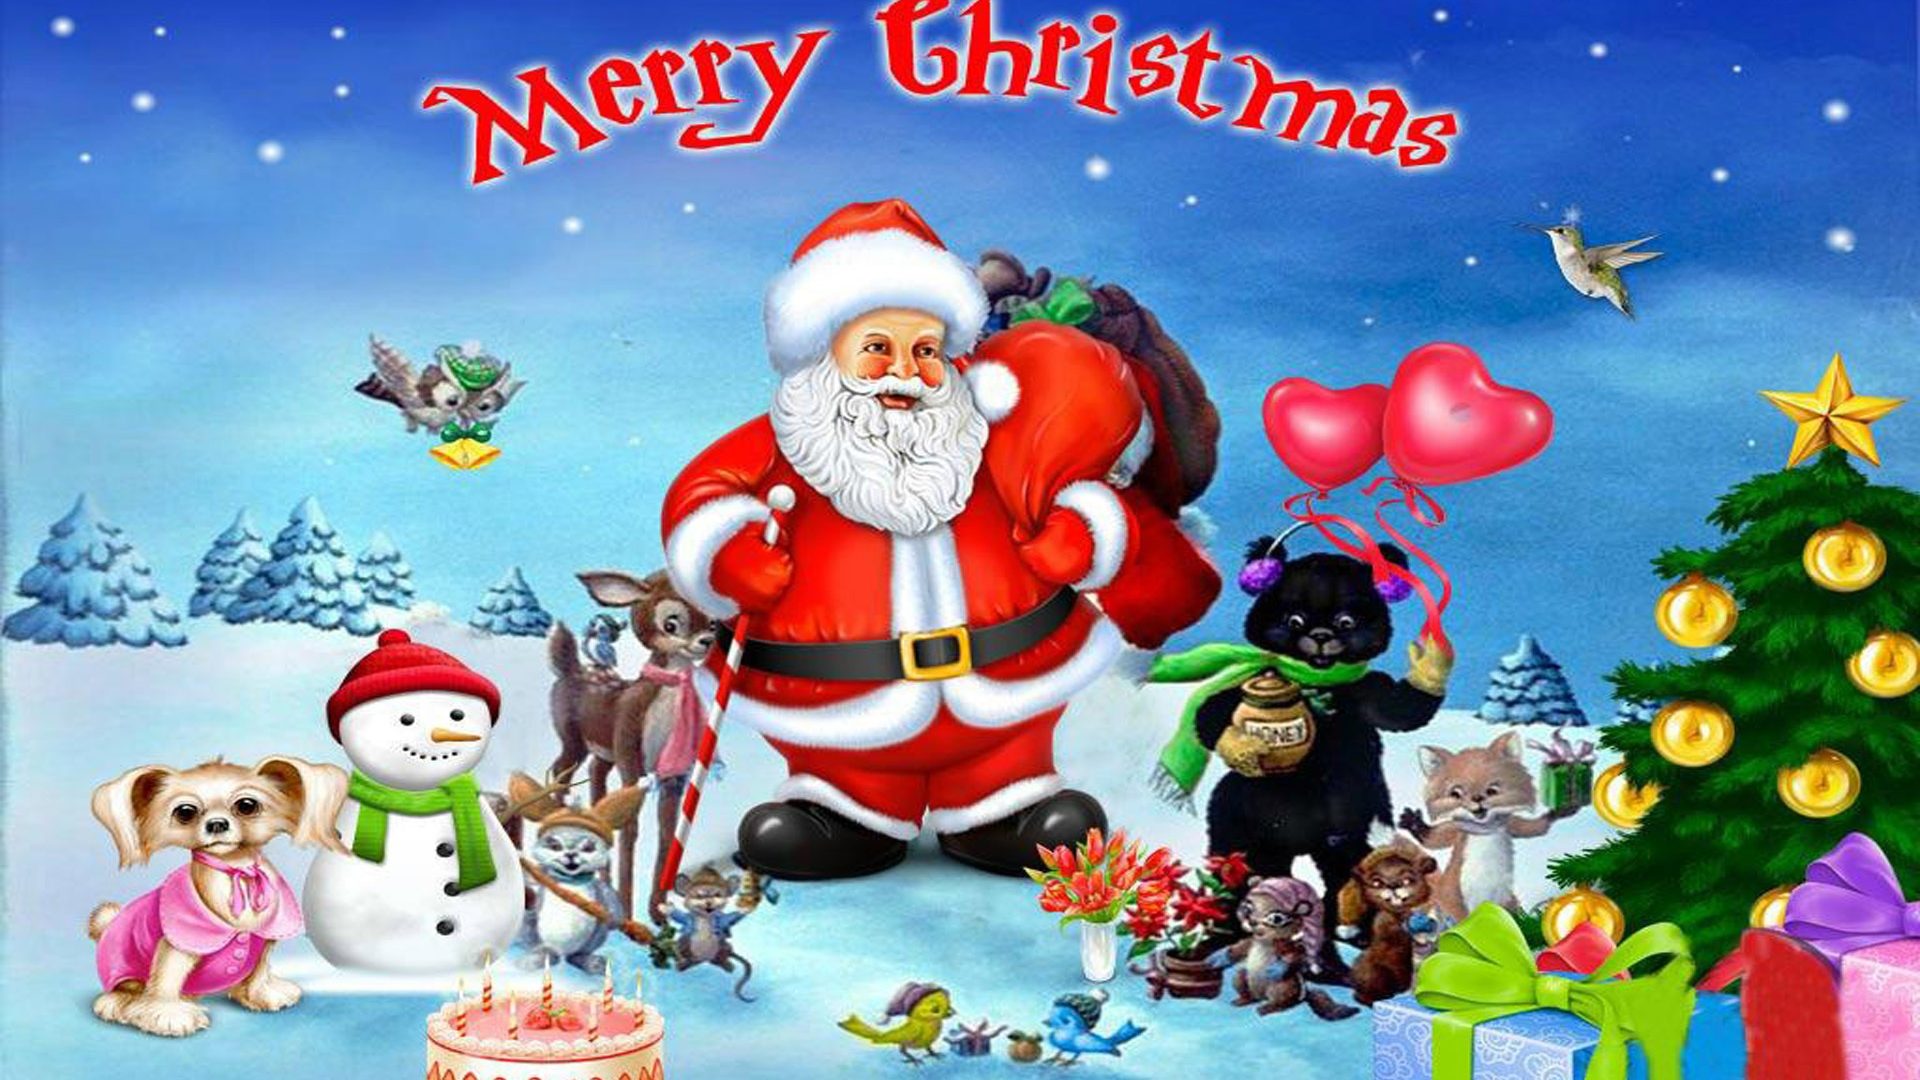 산타 클로스 배경 화면 무료 다운로드,산타 클로스,크리스마스,크리스마스 이브,만화 영화,소설 속의 인물